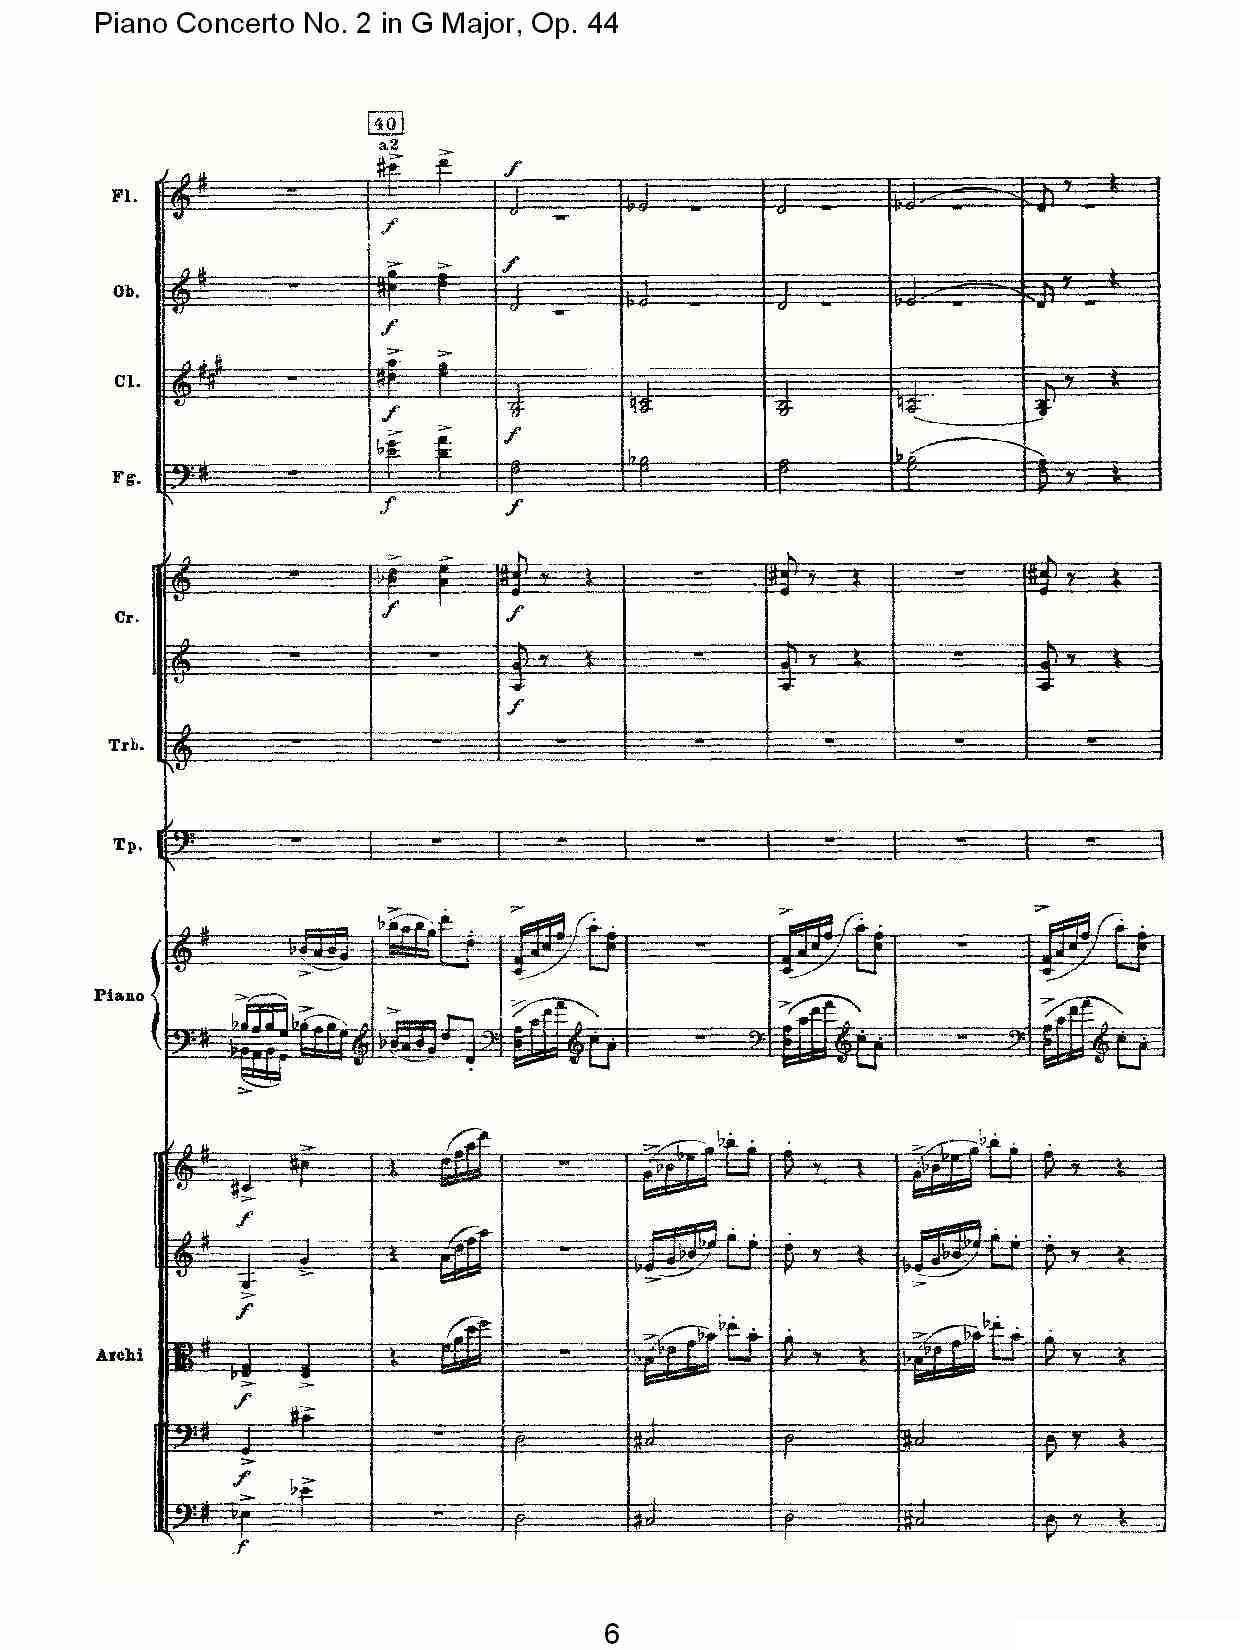 G大调第二钢琴协奏曲, Op.44第三乐章（一）钢琴曲谱（图6）